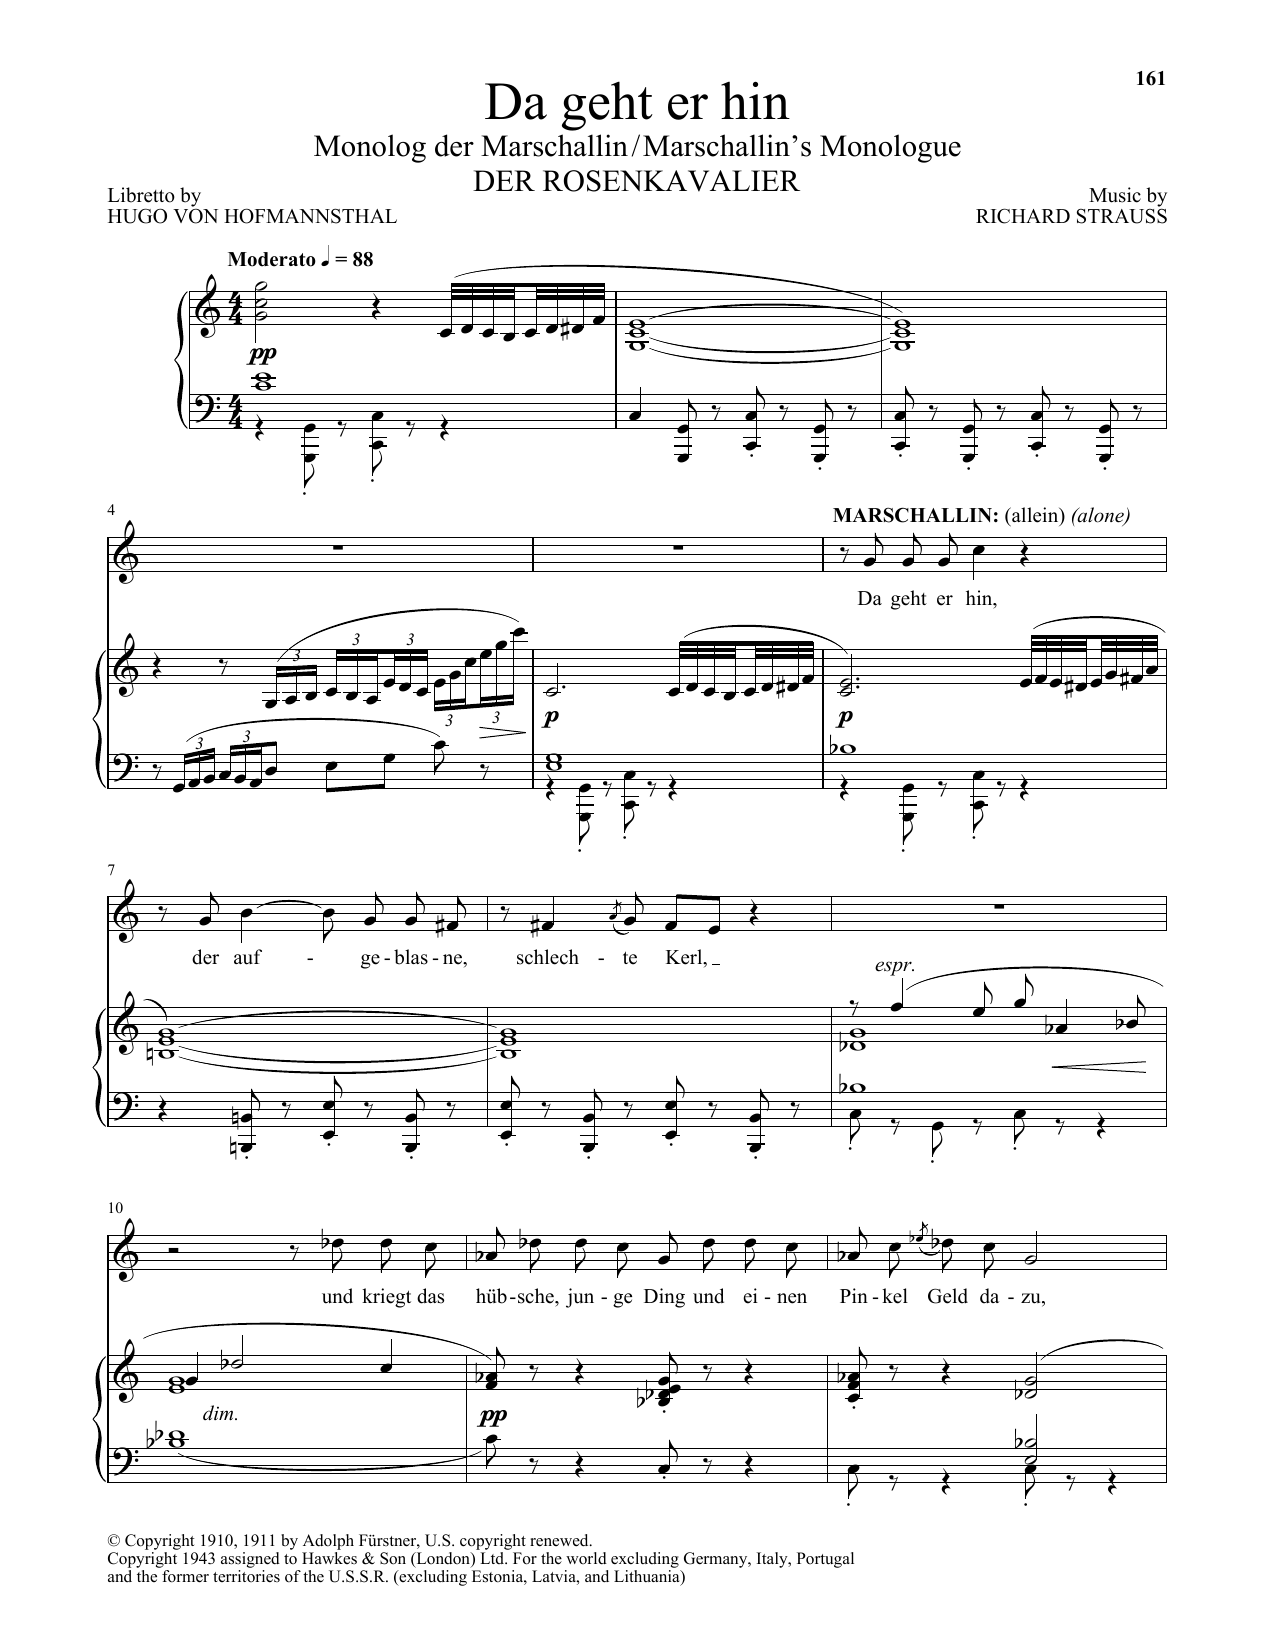 Richard Strauss Da Geht Er Hin (The Marschallin's Monologue) (from Der Rosenkavalier) sheet music notes and chords arranged for Piano & Vocal